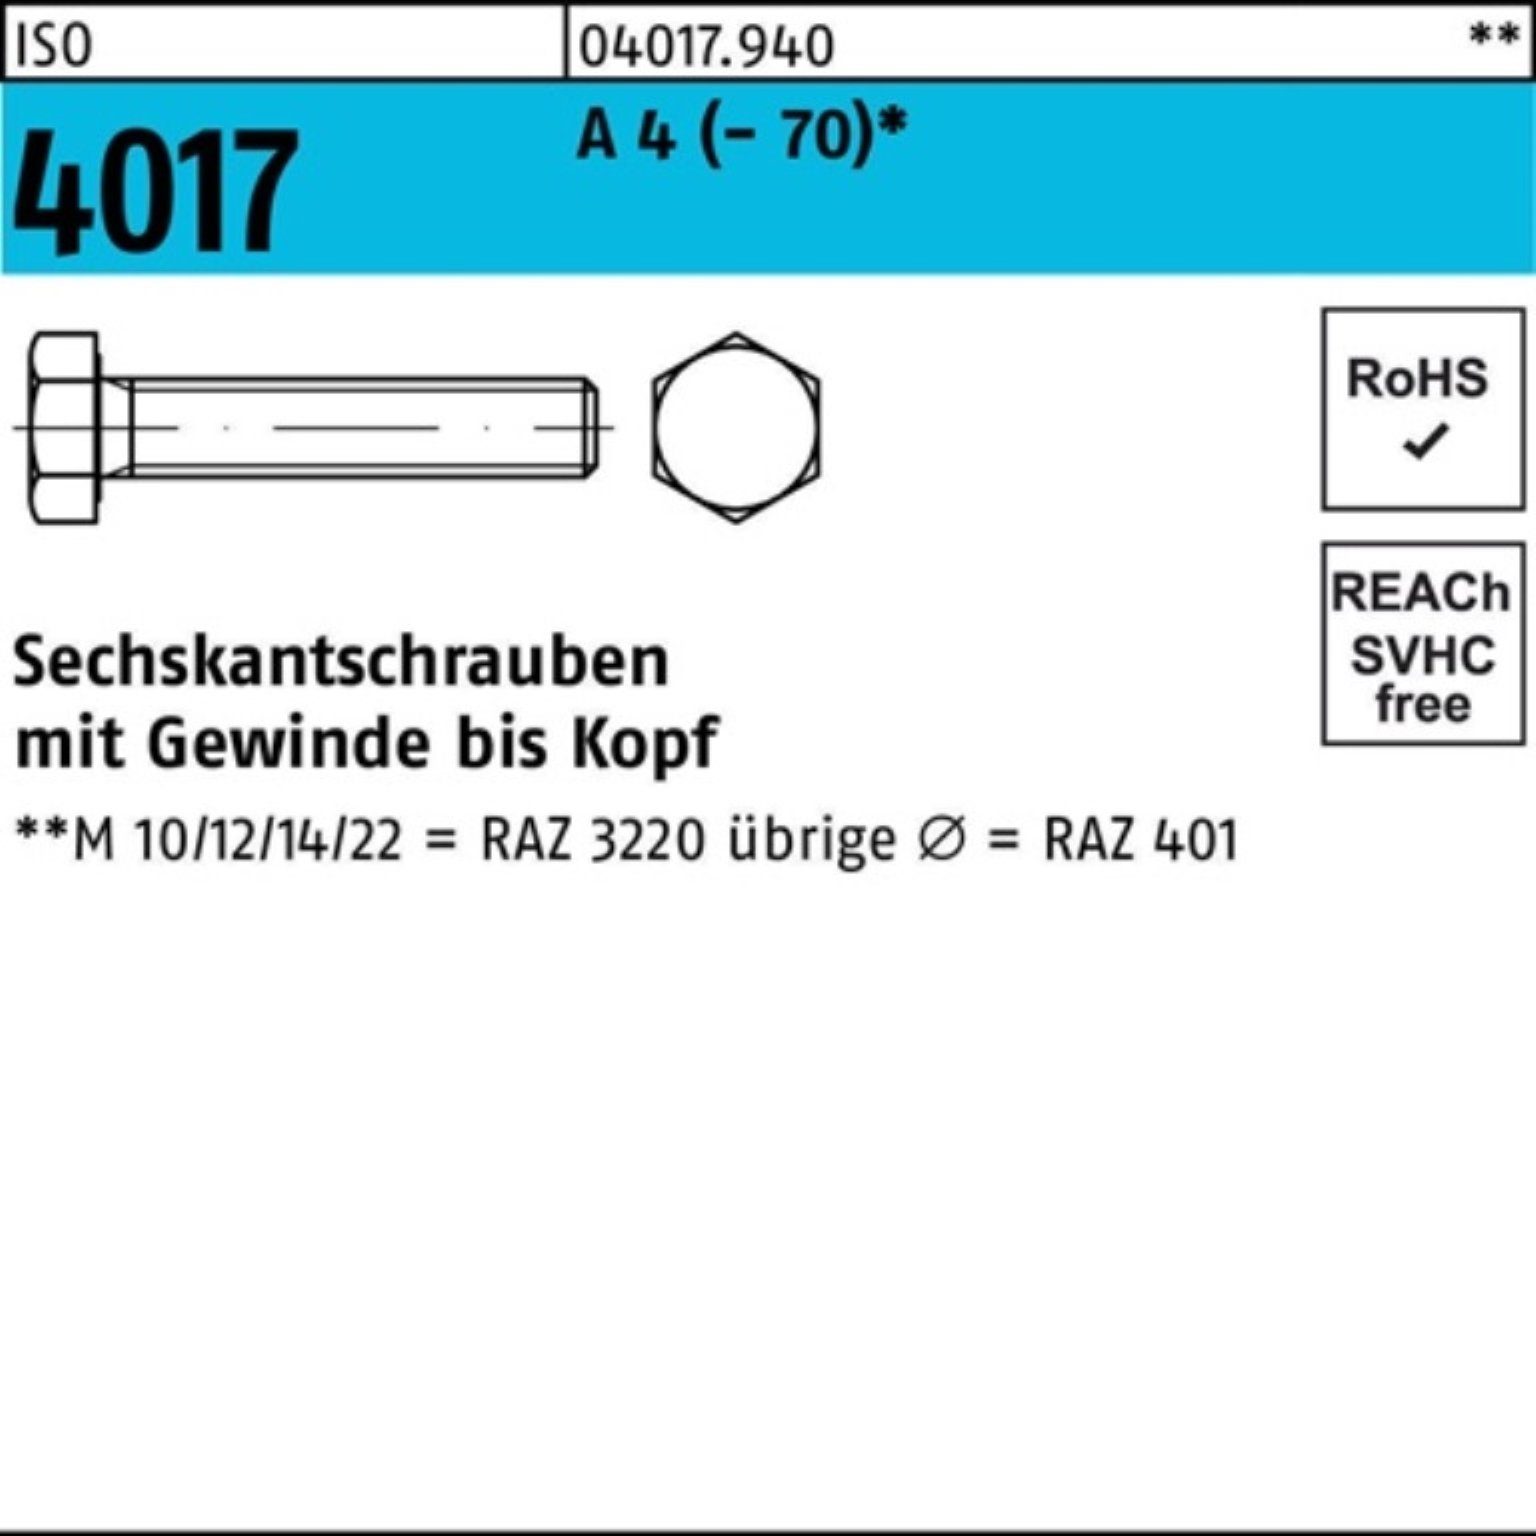 Bufab Sechskantschraube 200er Pack Sechskantschraube ISO 4017 VG M8x 35 A 4 (70) 200 Stück